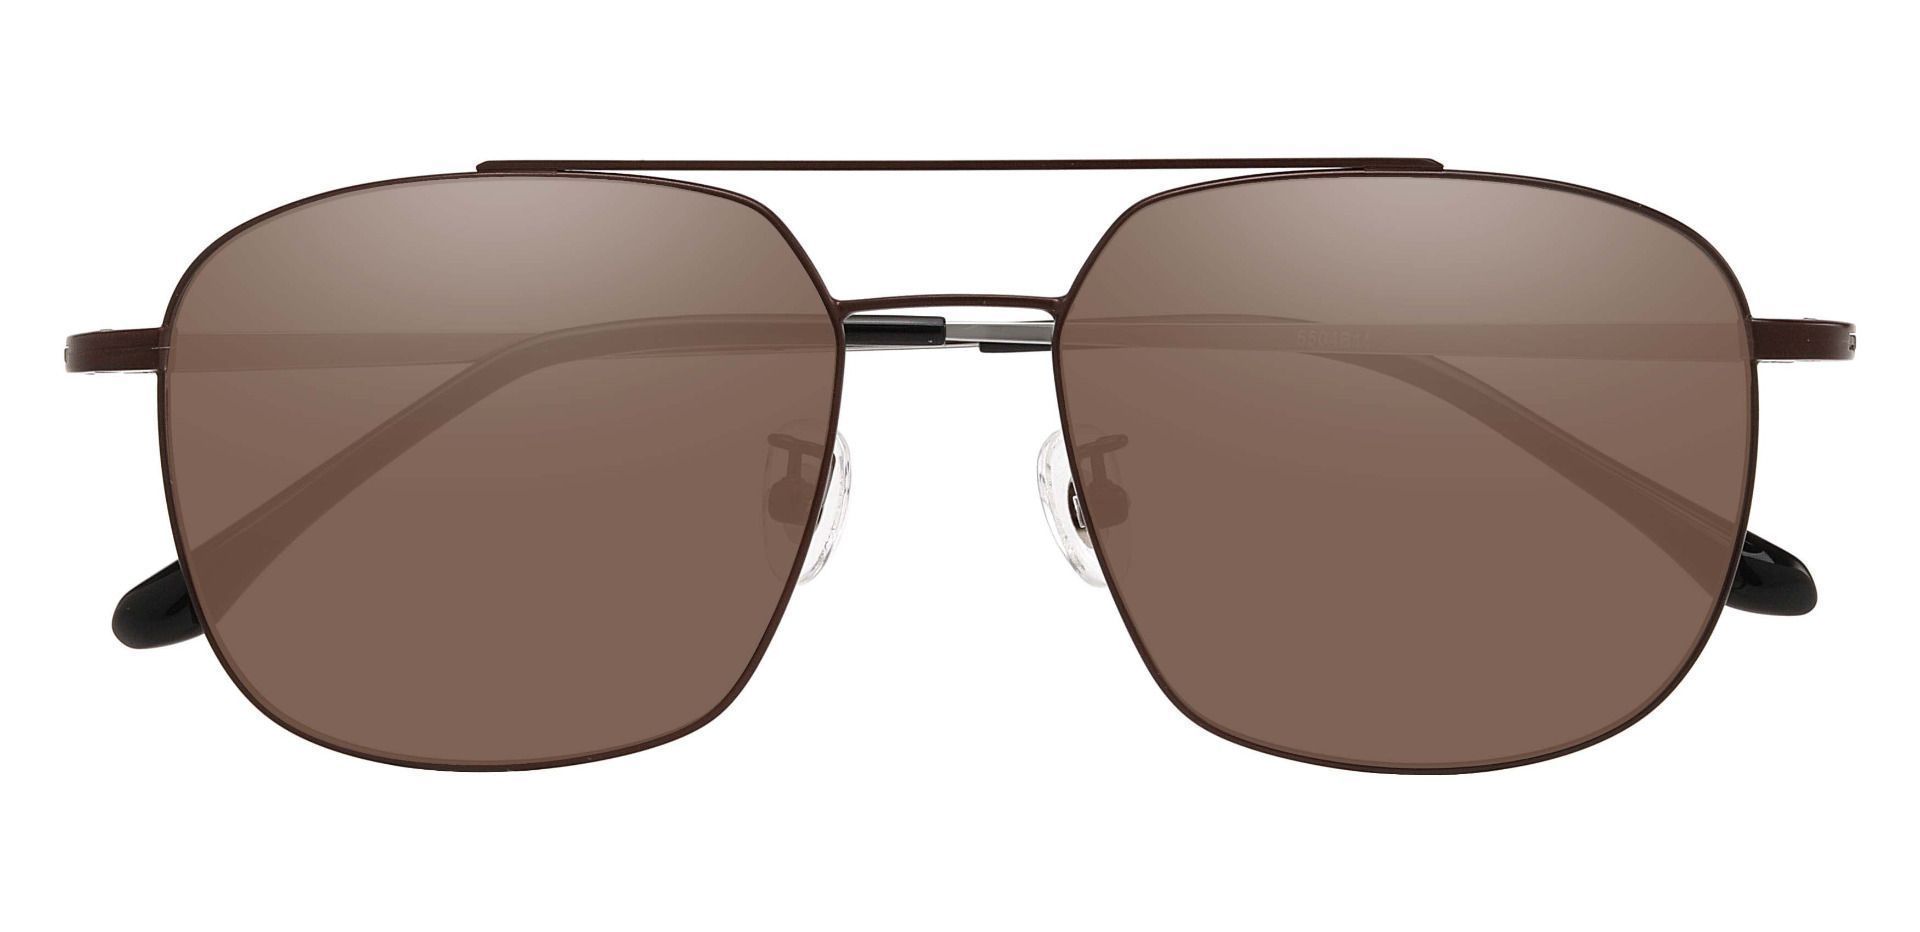 Trevor Aviator Reading Sunglasses - Brown Frame With Brown Lenses